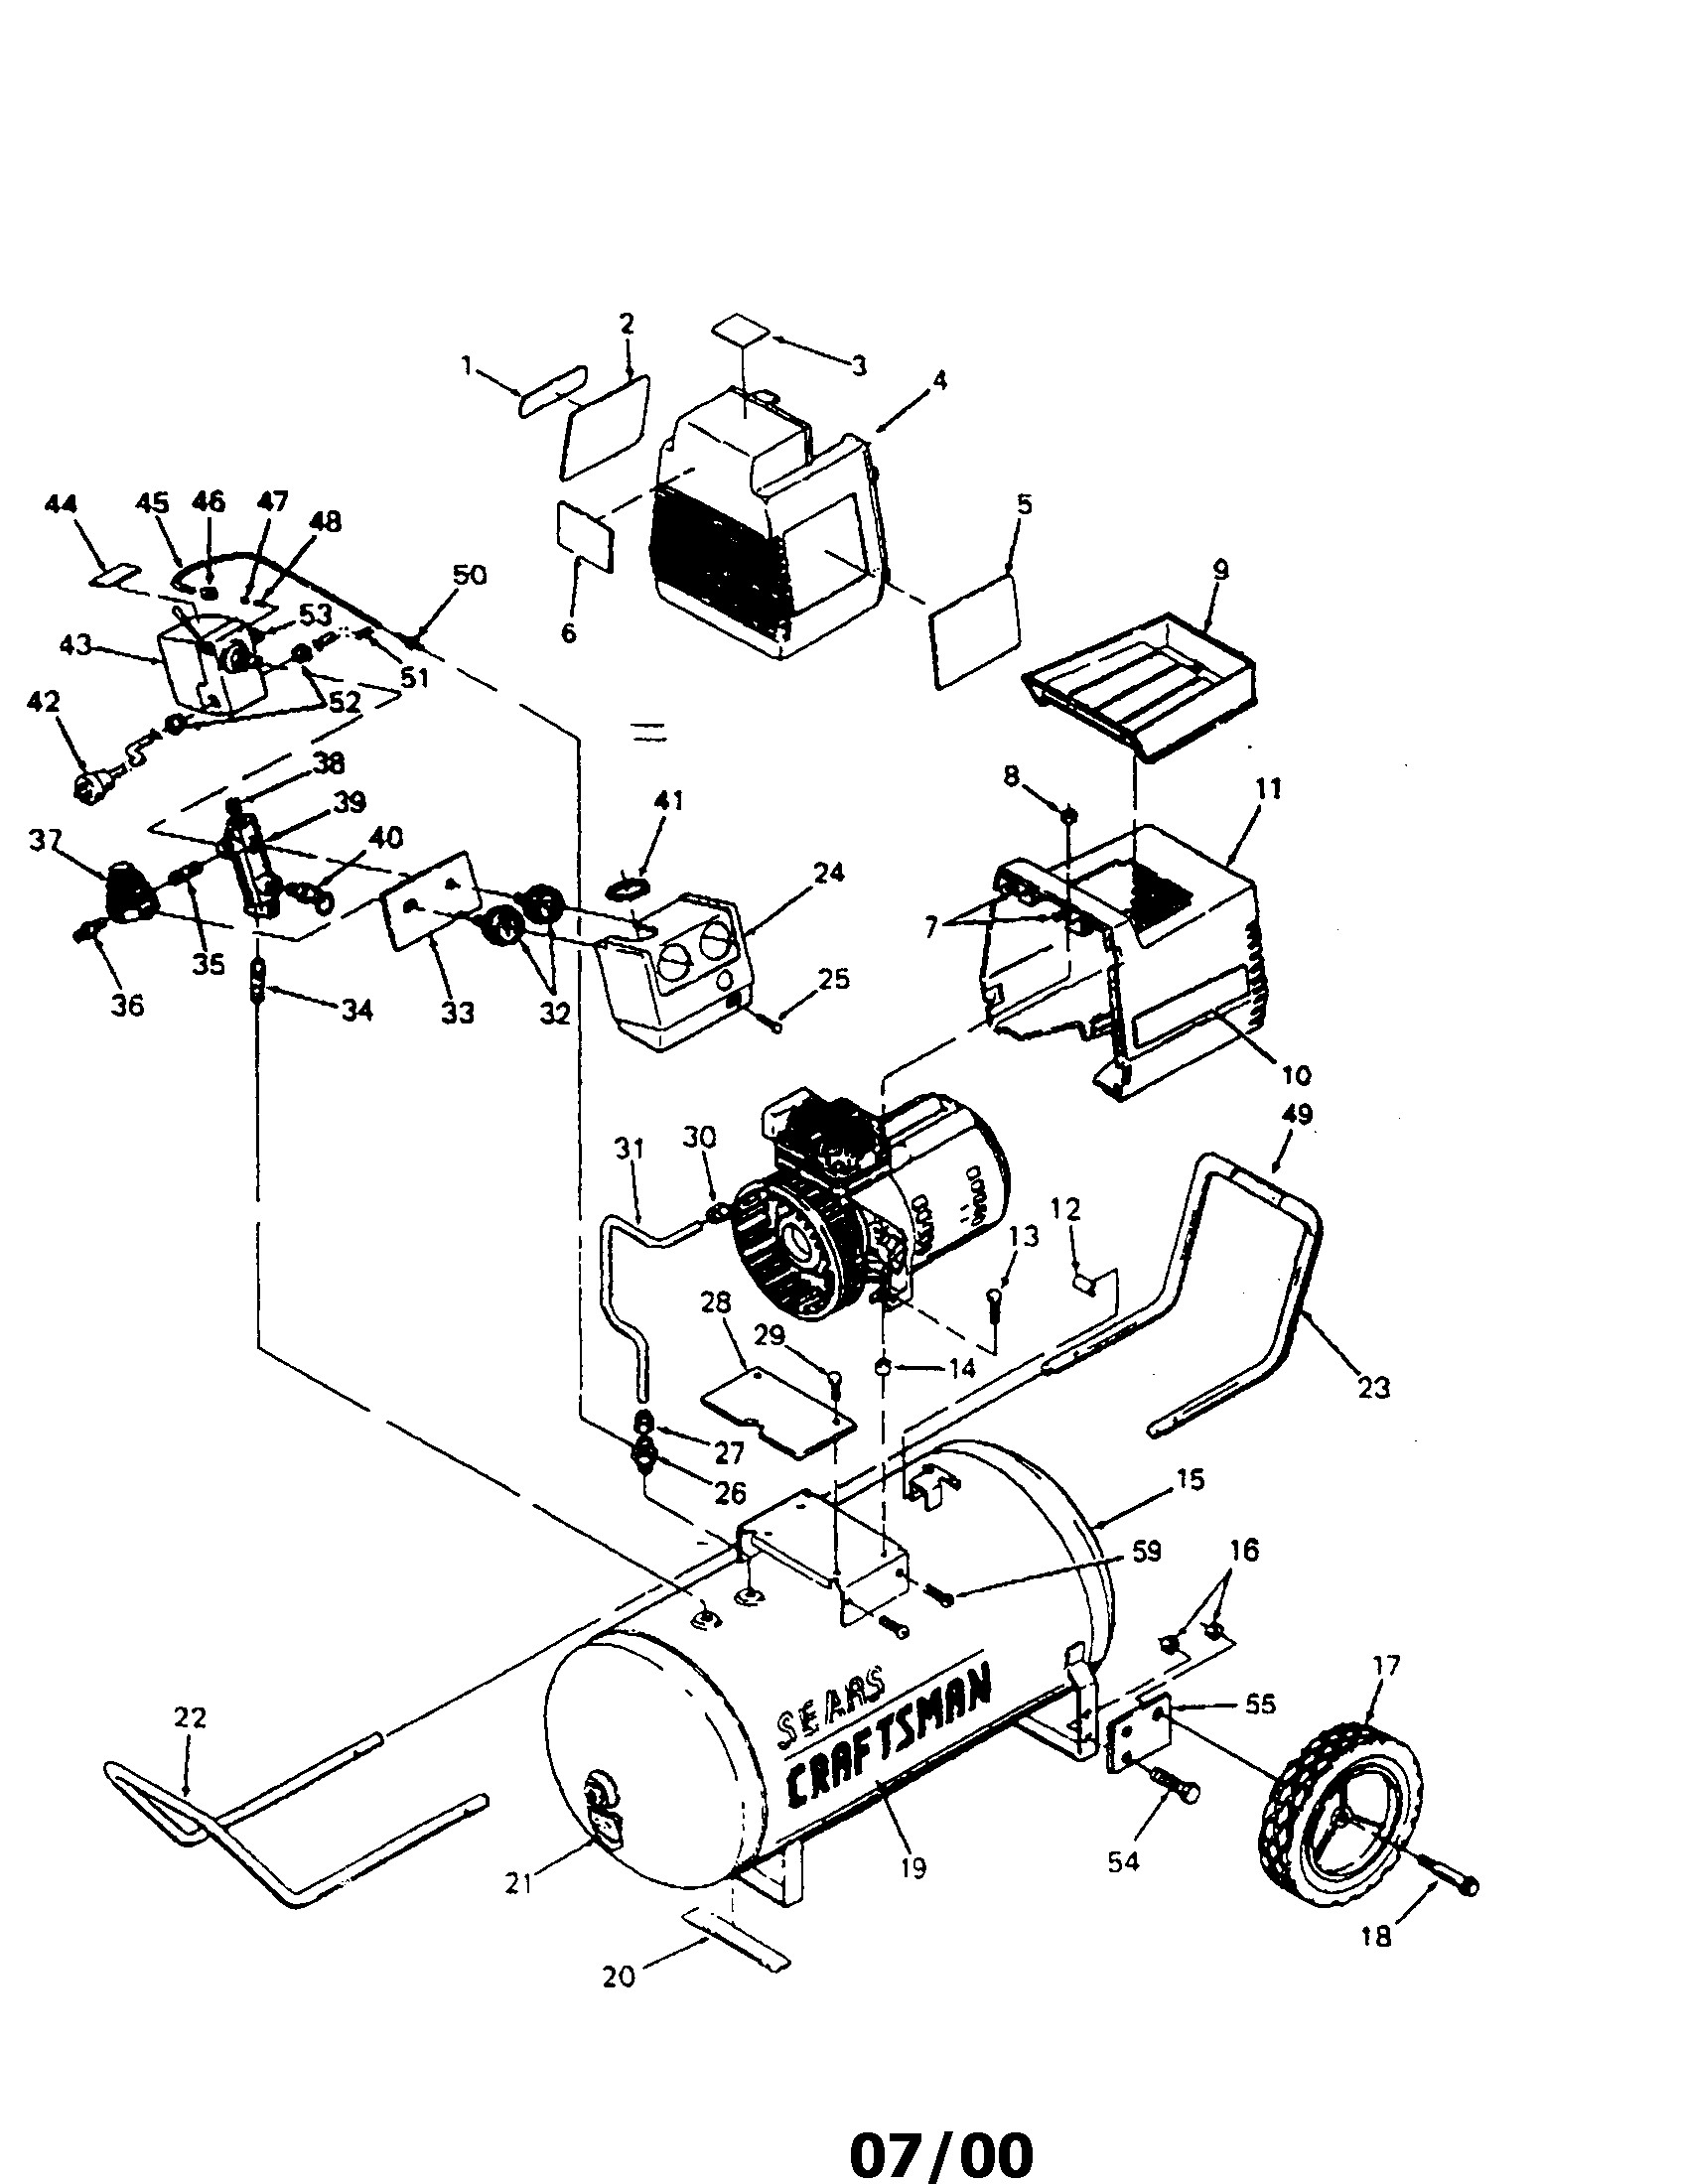 Air Compressor Parts Diagram Sears Craftsman 919 Air Pressor Parts Of Air Compressor Parts Diagram